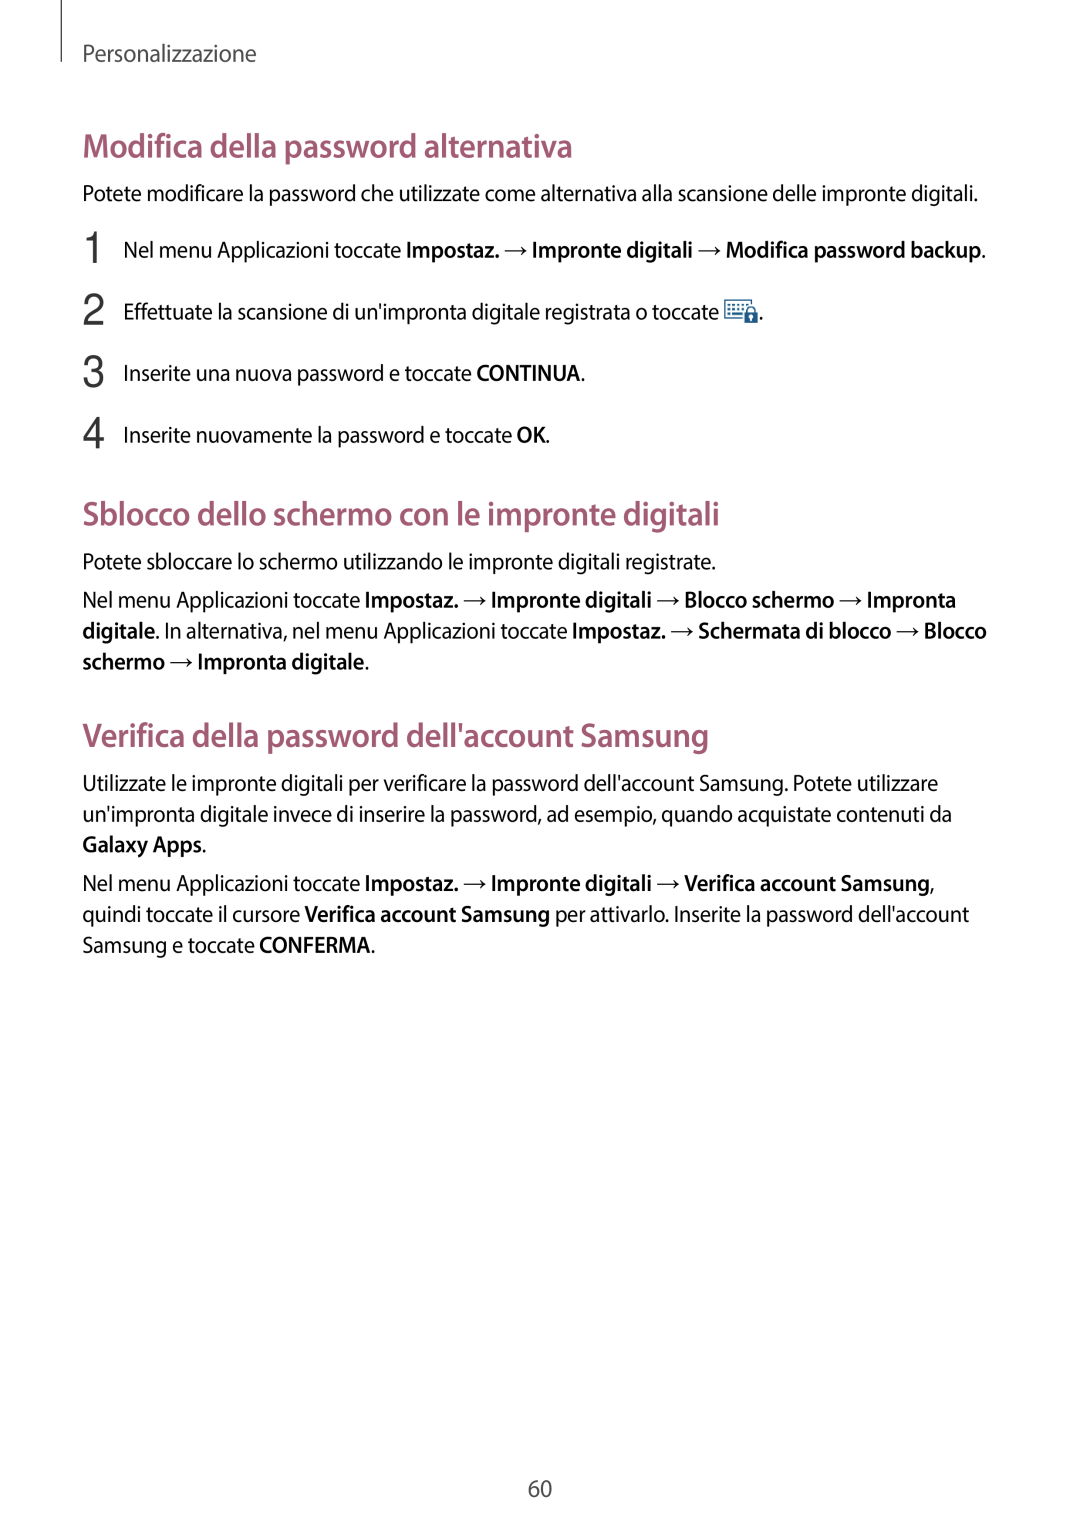 Samsung SM-G800FZDAXEO, SM-G800FZWADBT Modifica della password alternativa, Sblocco dello schermo con le impronte digitali 